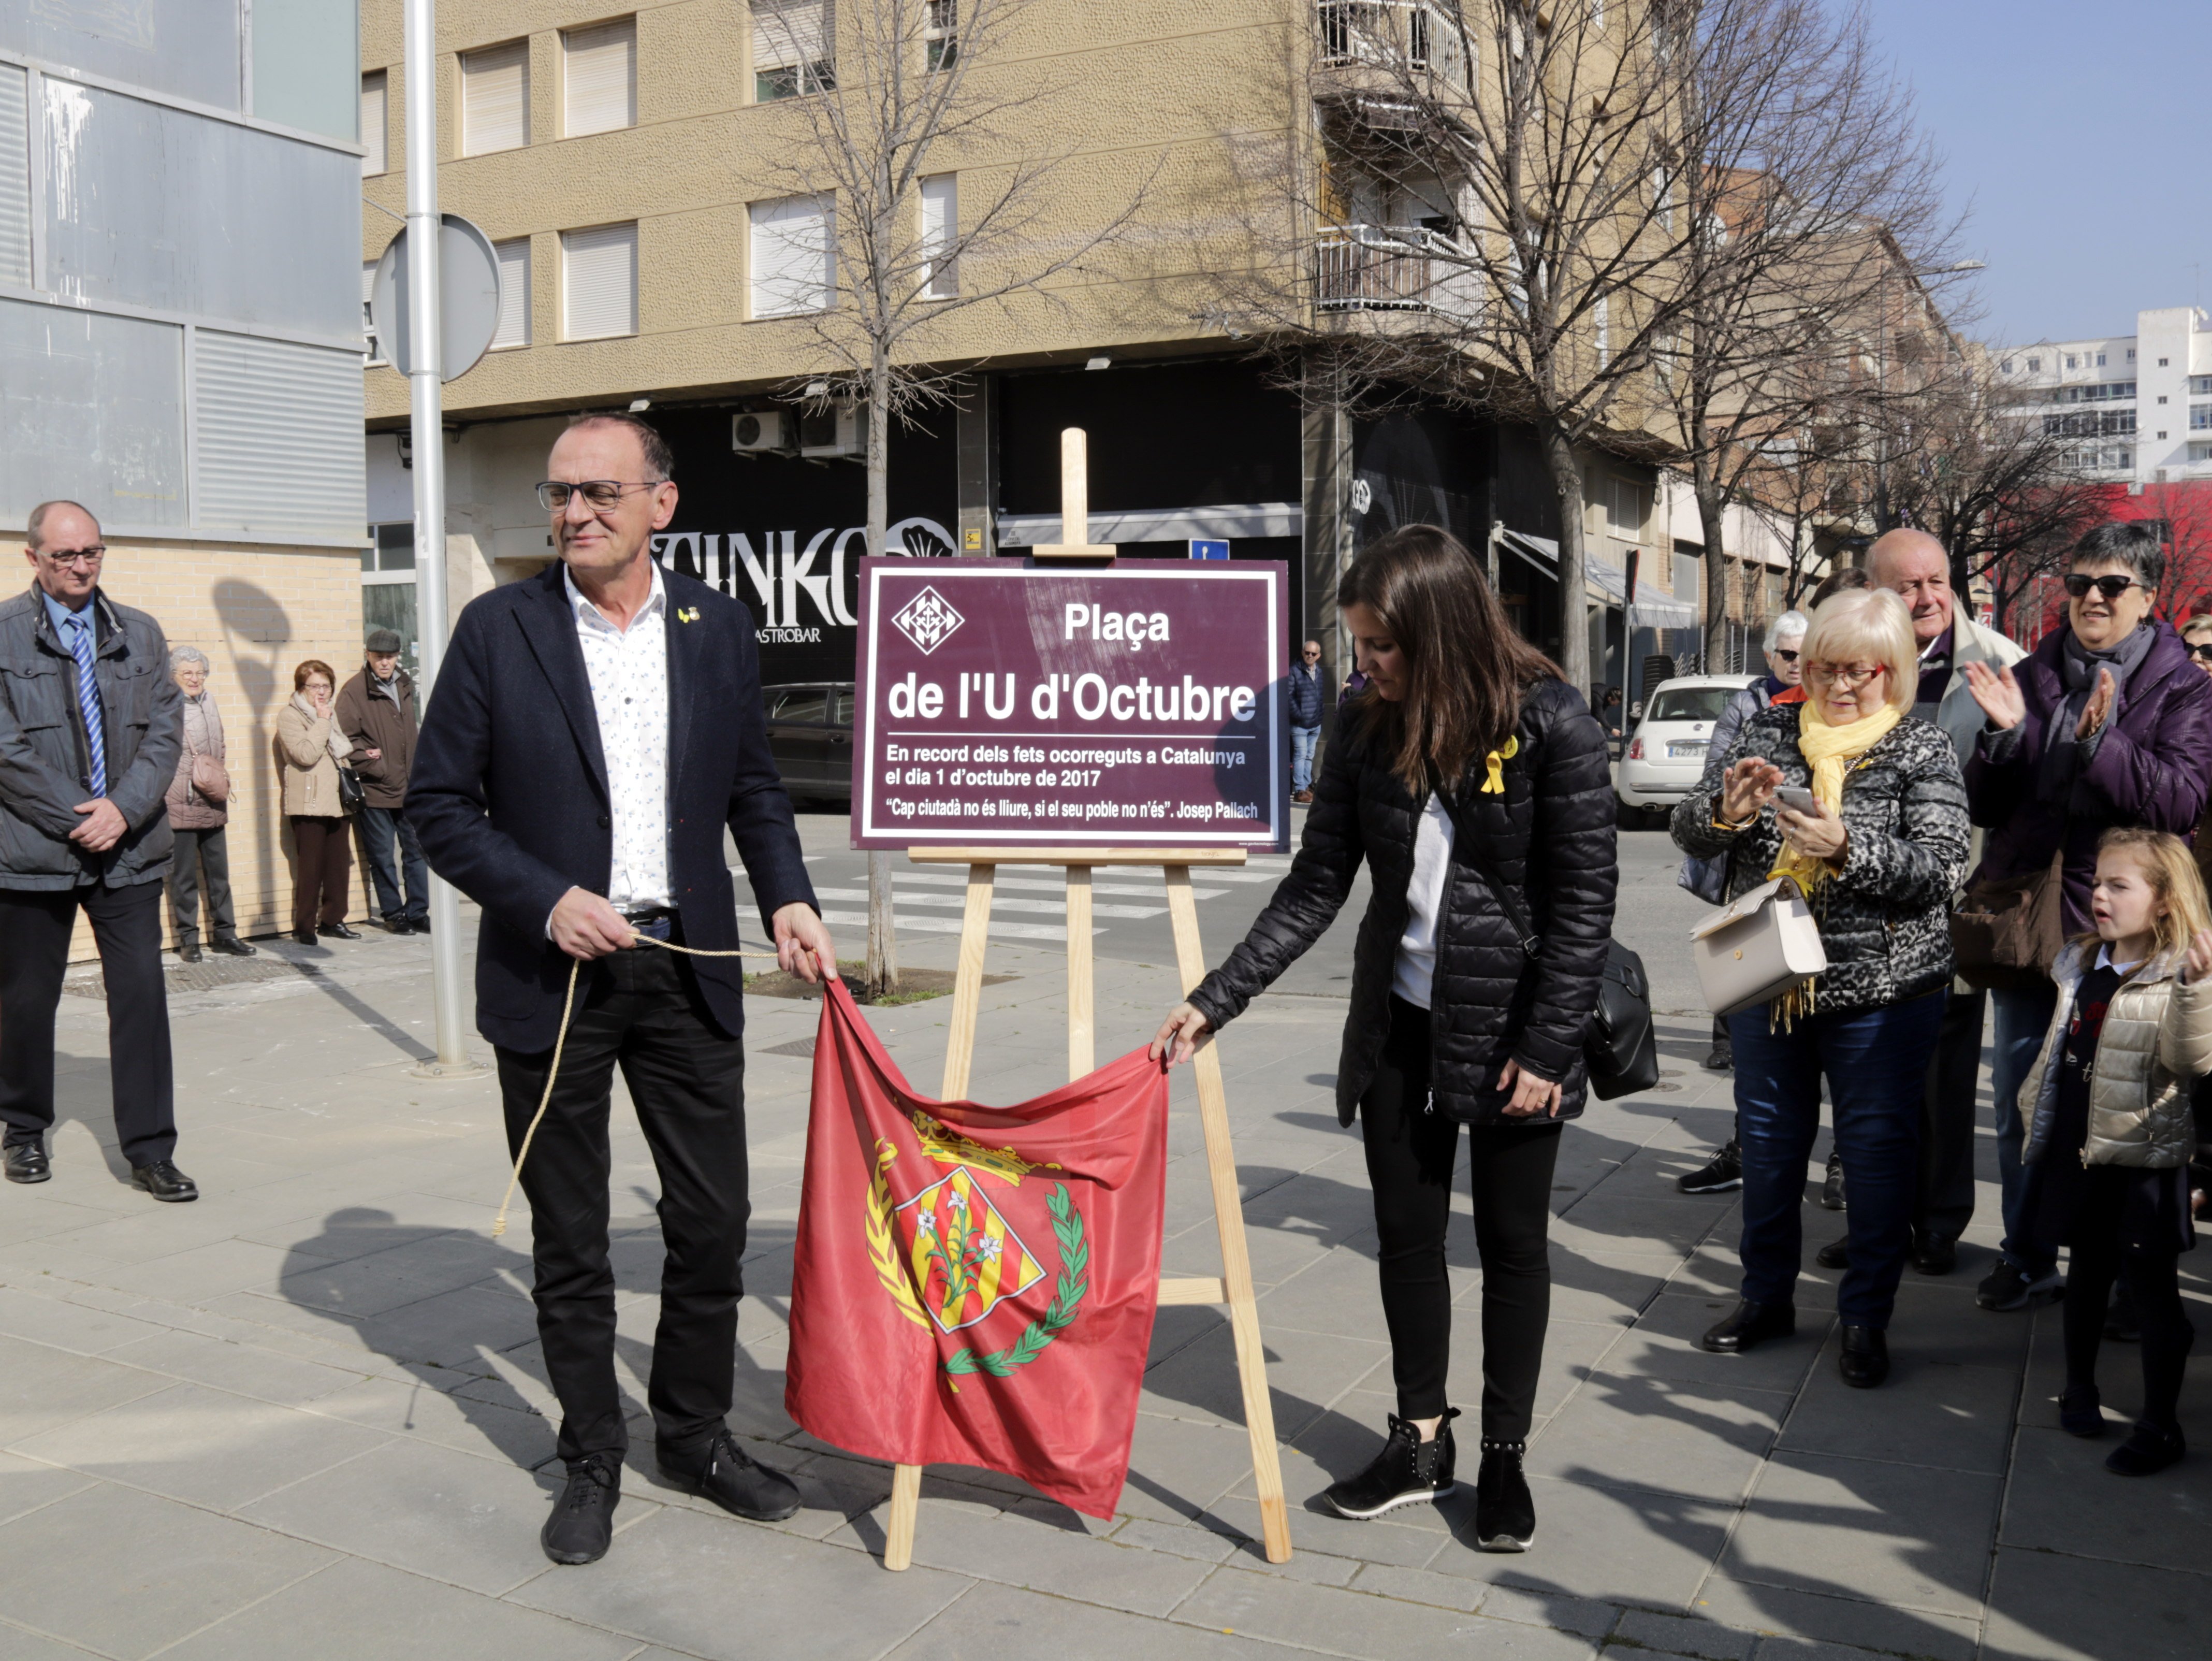 Lleida inaugura la plaza del U d'Octubre